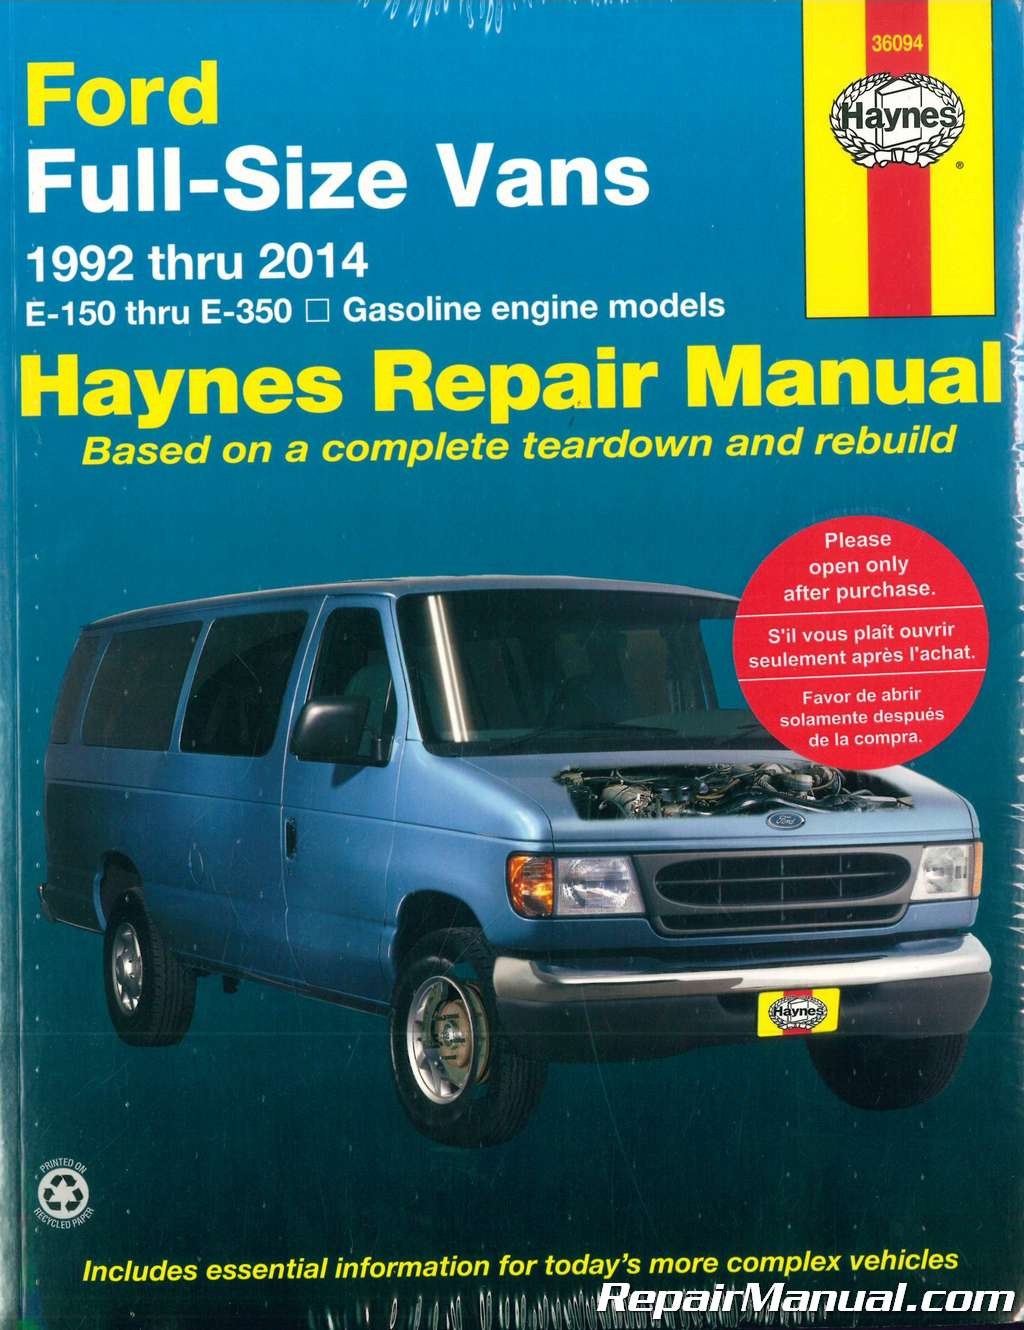 Picture of: Haynes Ford Full-Size Vans – Repair Manual